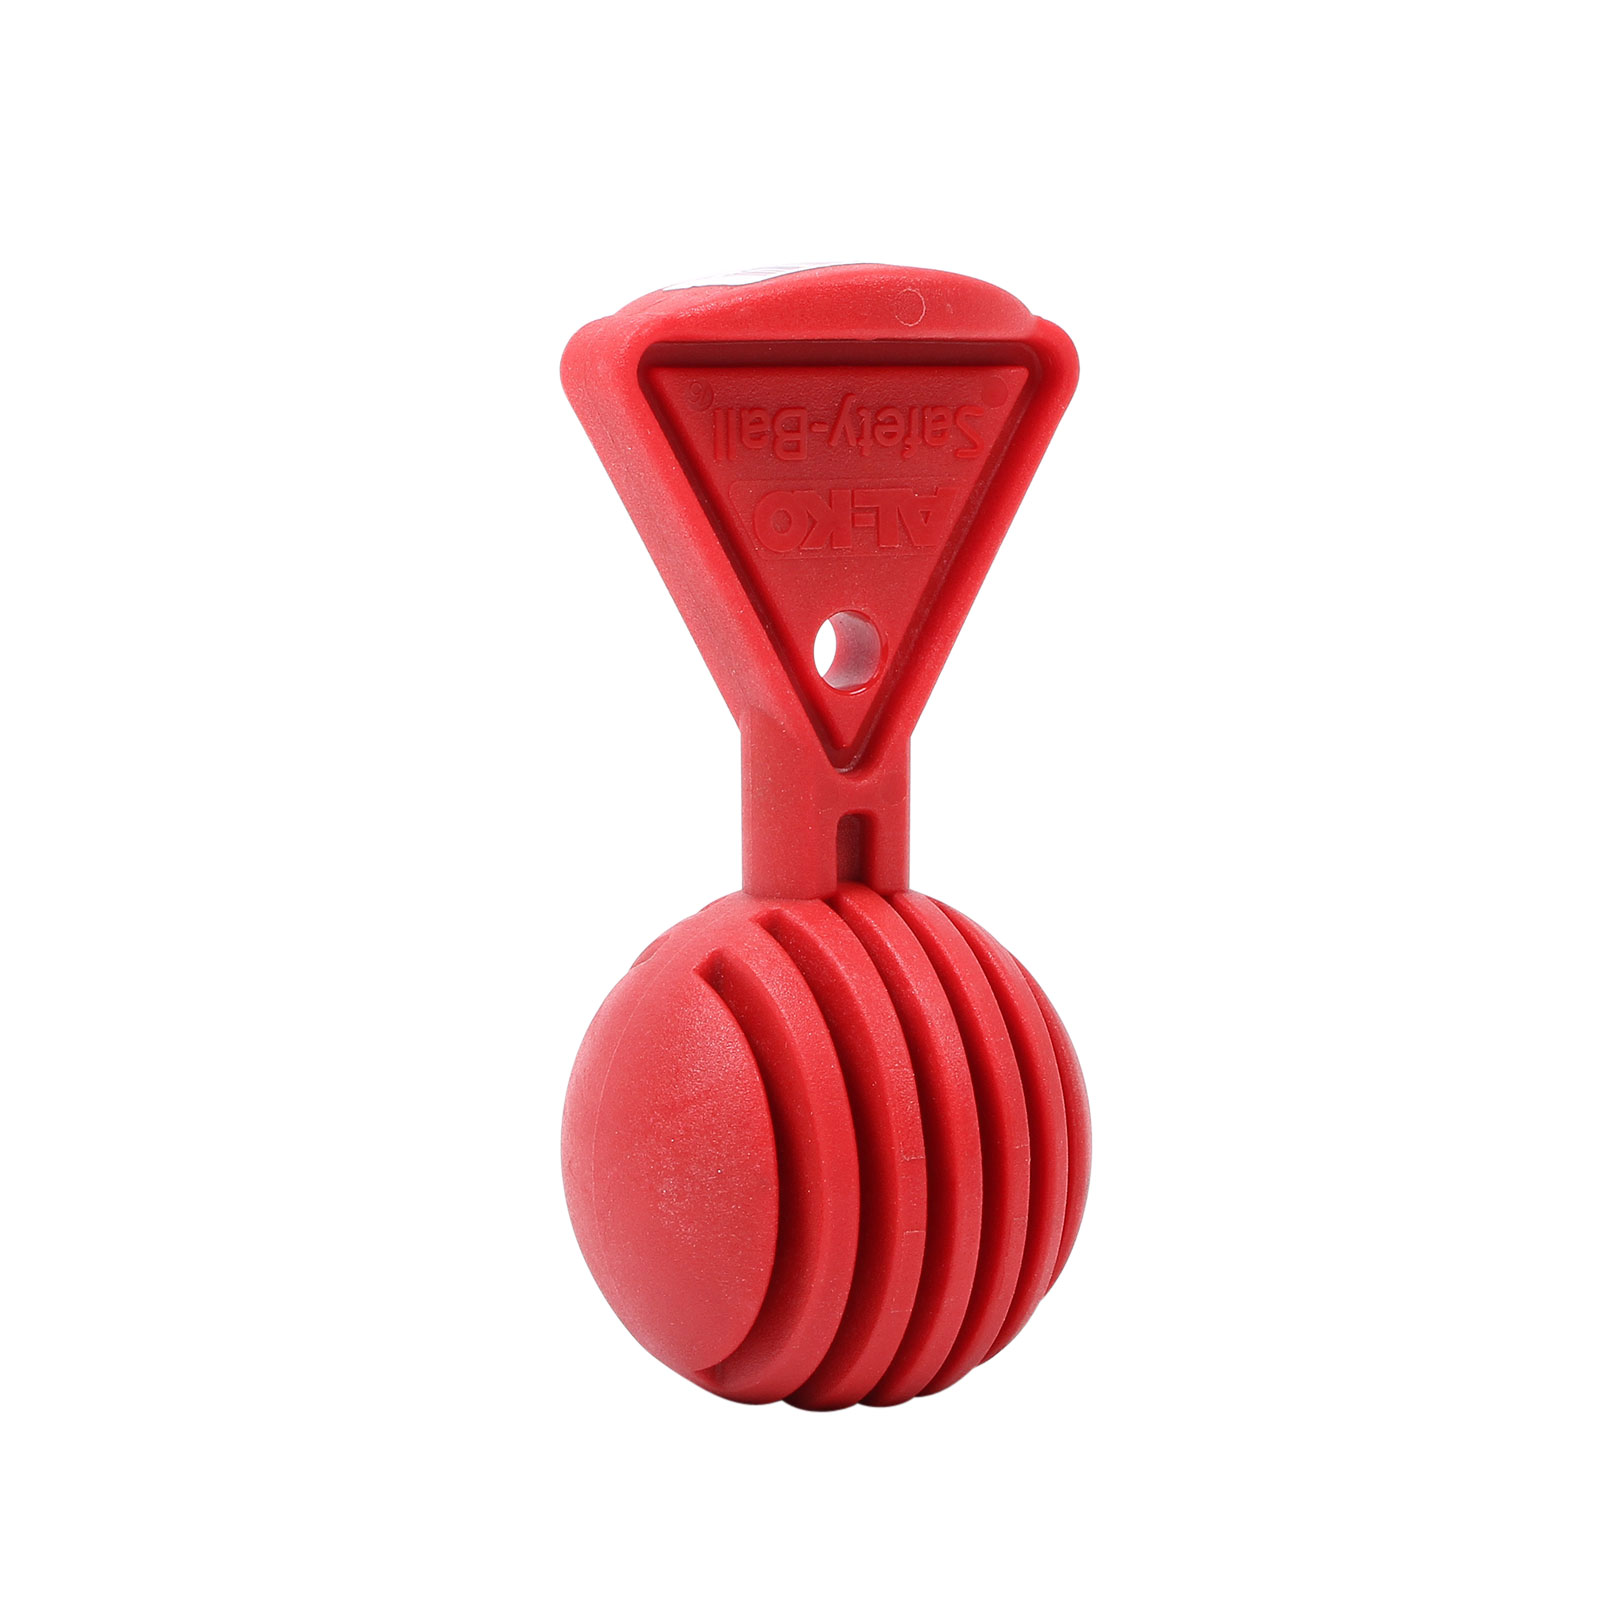 Al-KO Safety Ball rot zur Sicherung der Antischlingerkupplung